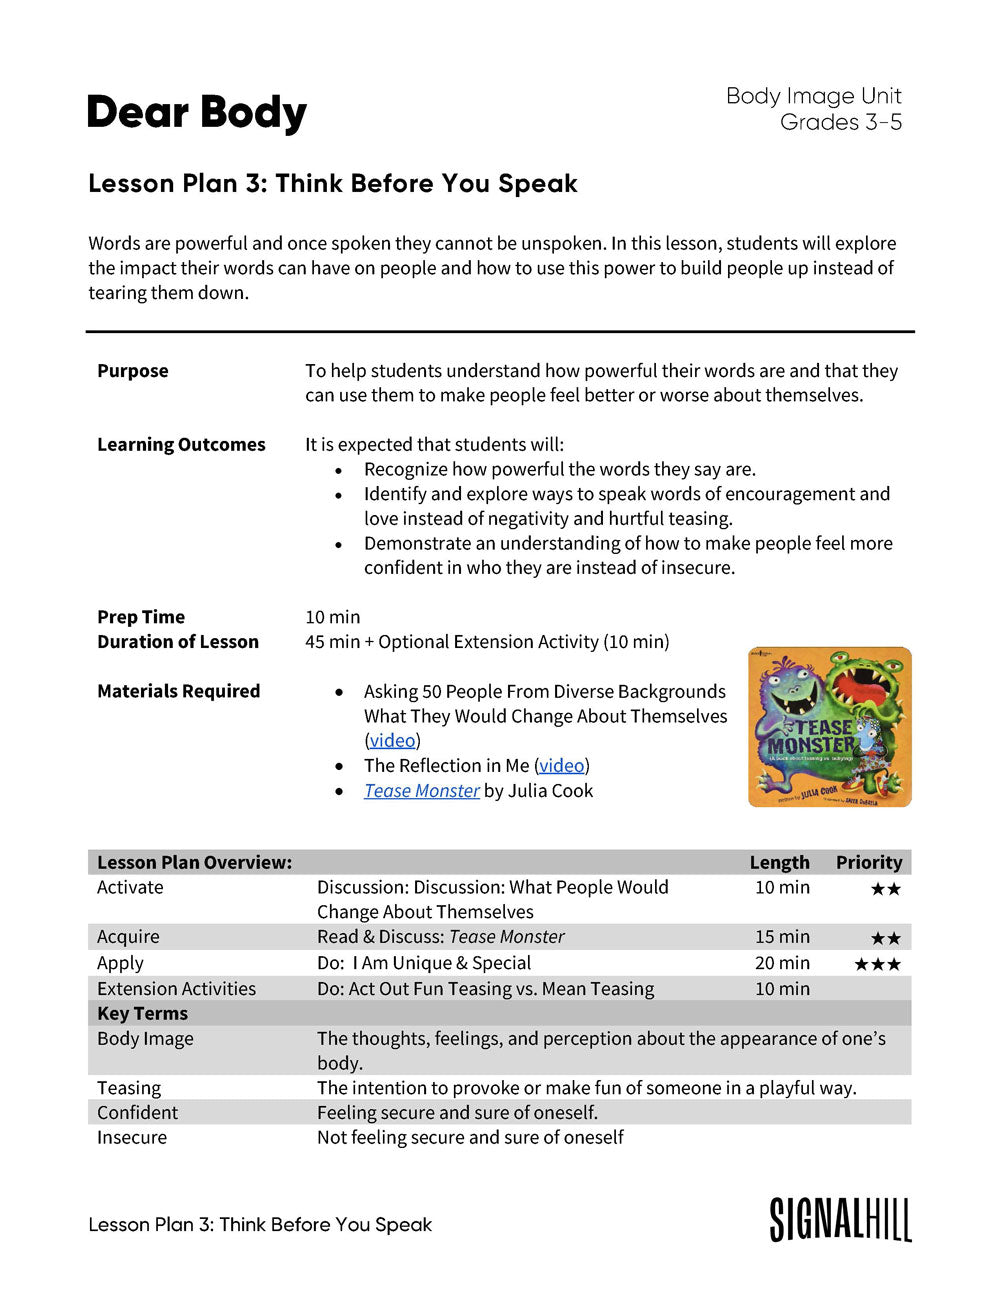 Dear Body - Lesson Plan Bundle (4 Lesson Plans)